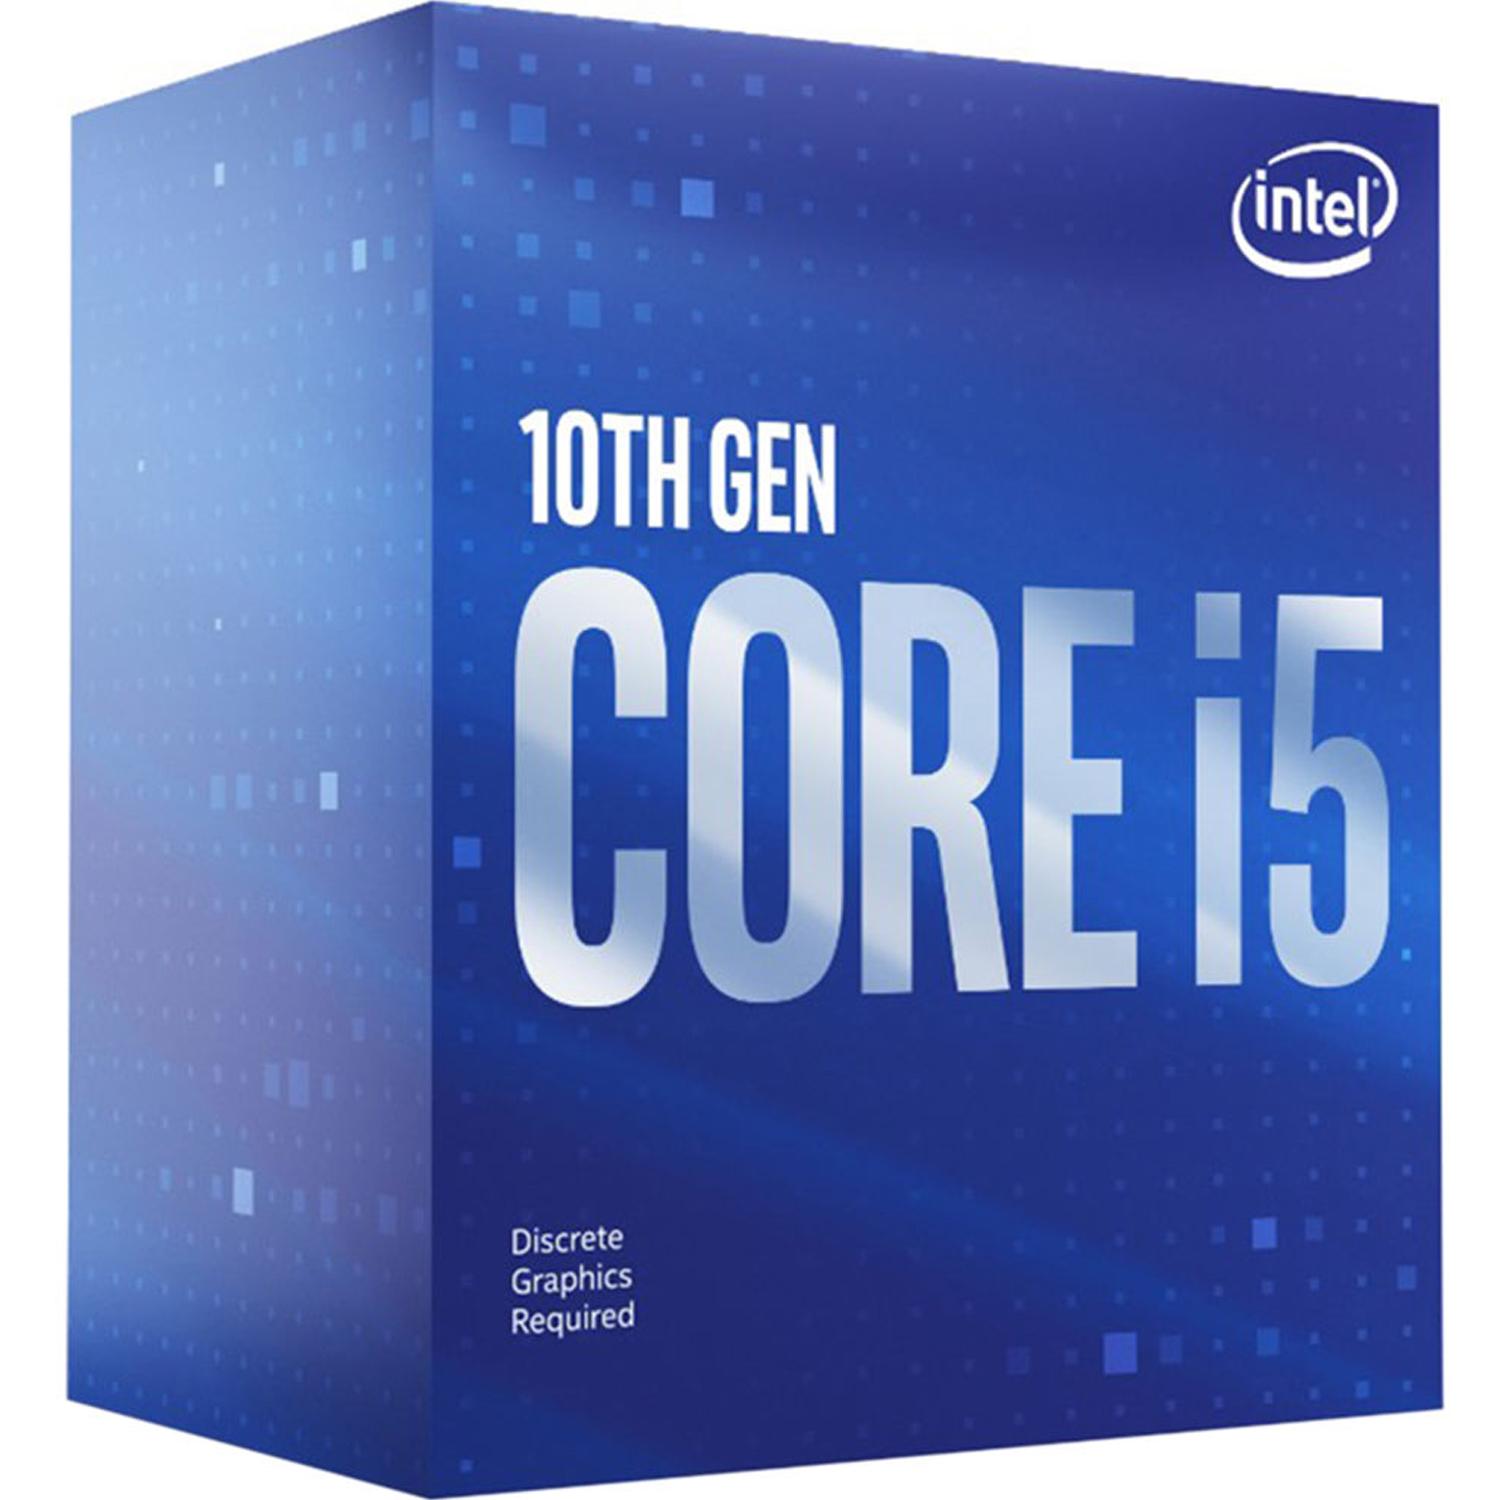 Colección Intel 23-10-2020